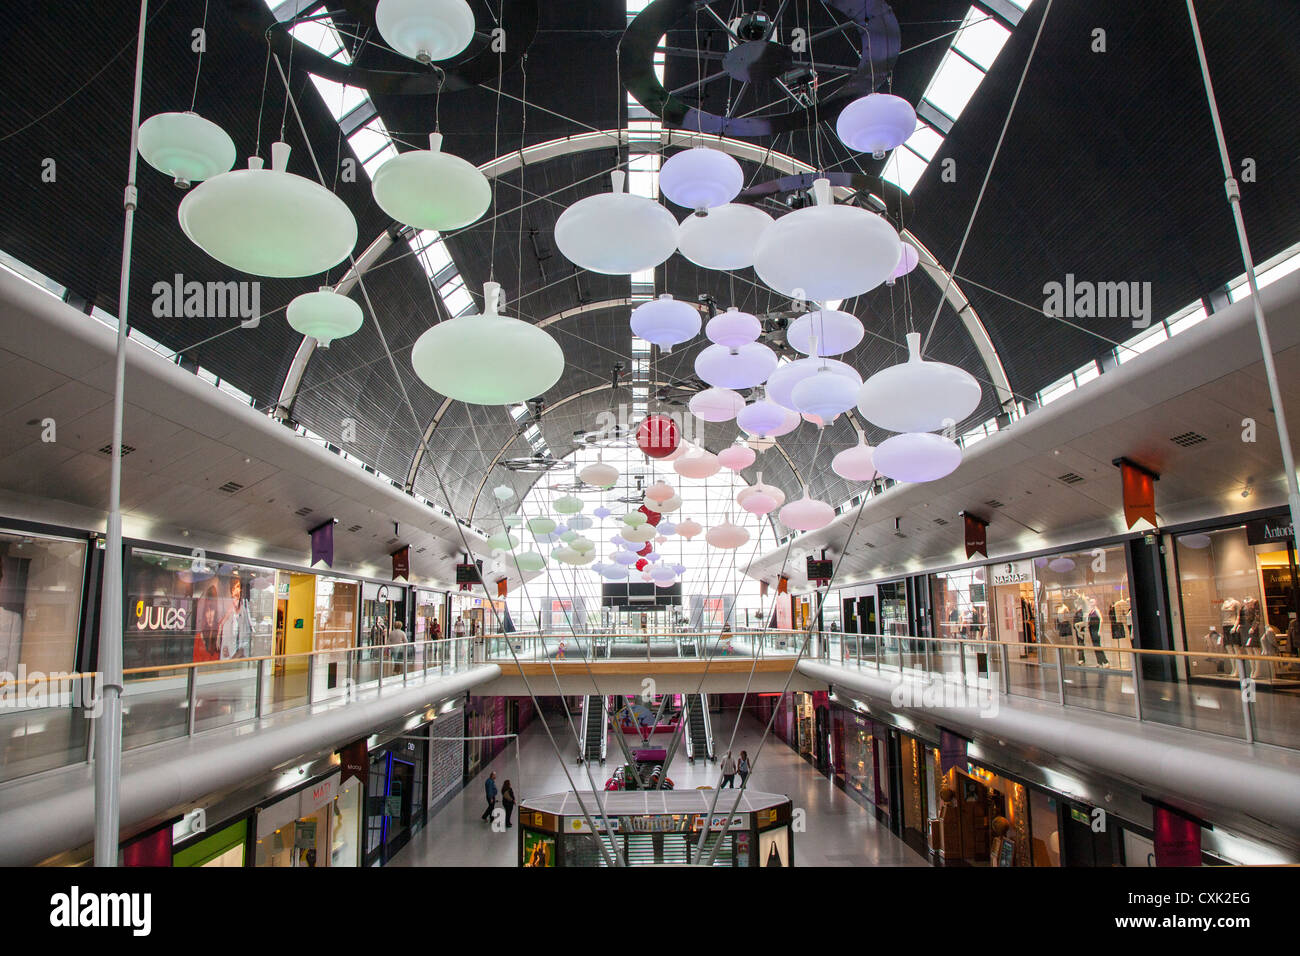 Cite Europe Centre Shopping Banque d'image et photos - Alamy